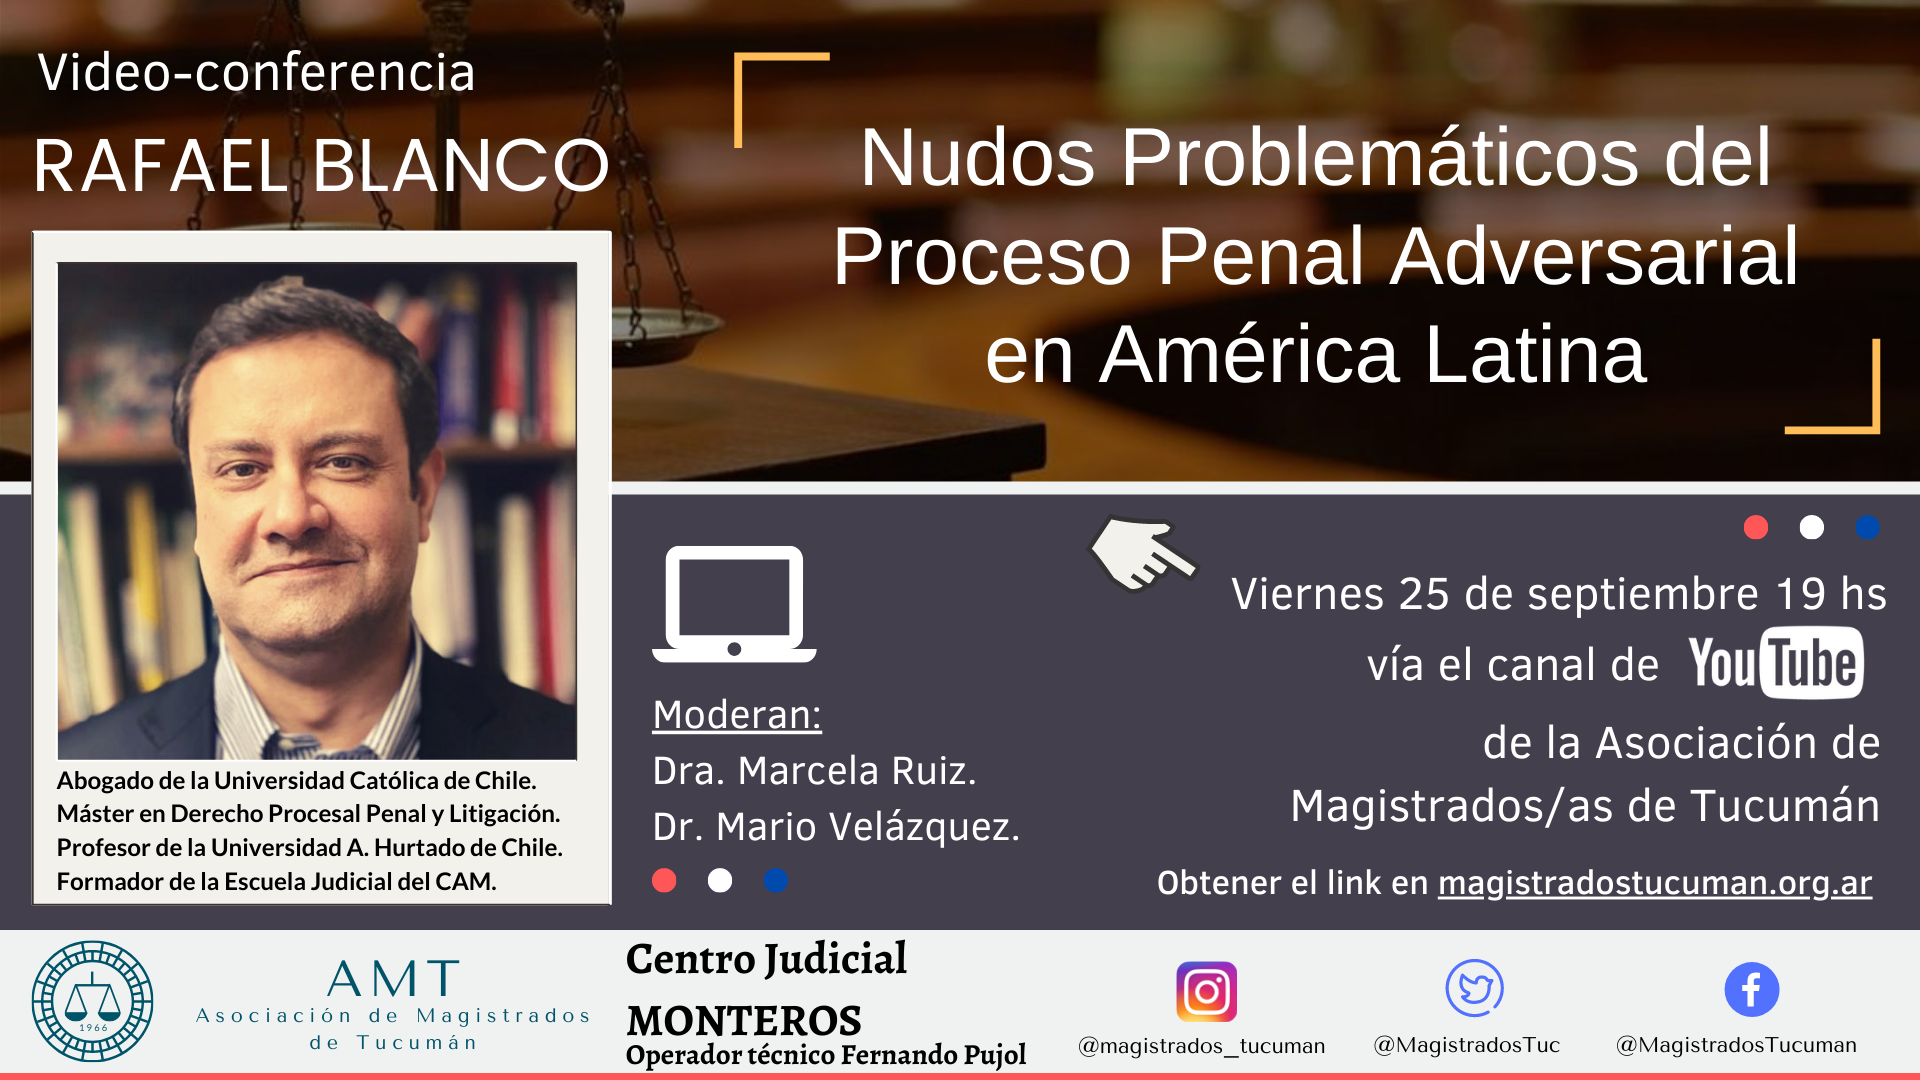 Vuelva a ver la conferencia de Rafael Blanco «Nudos Problemáticos del Proceso Penal Adversarial en América Latina»